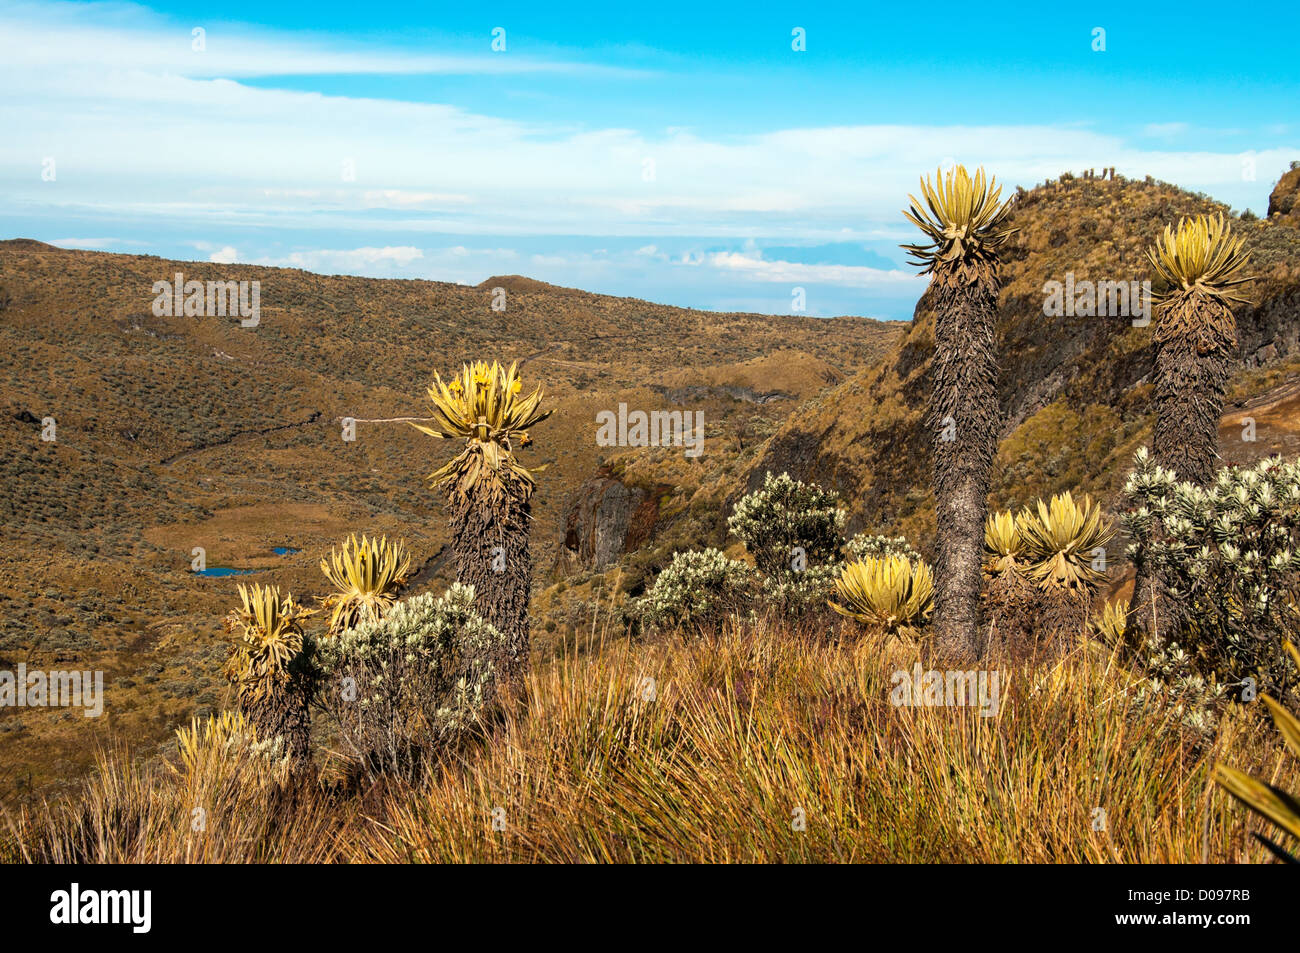 Landscape in Nevado del Ruiz with various espeletia plants. Stock Photo